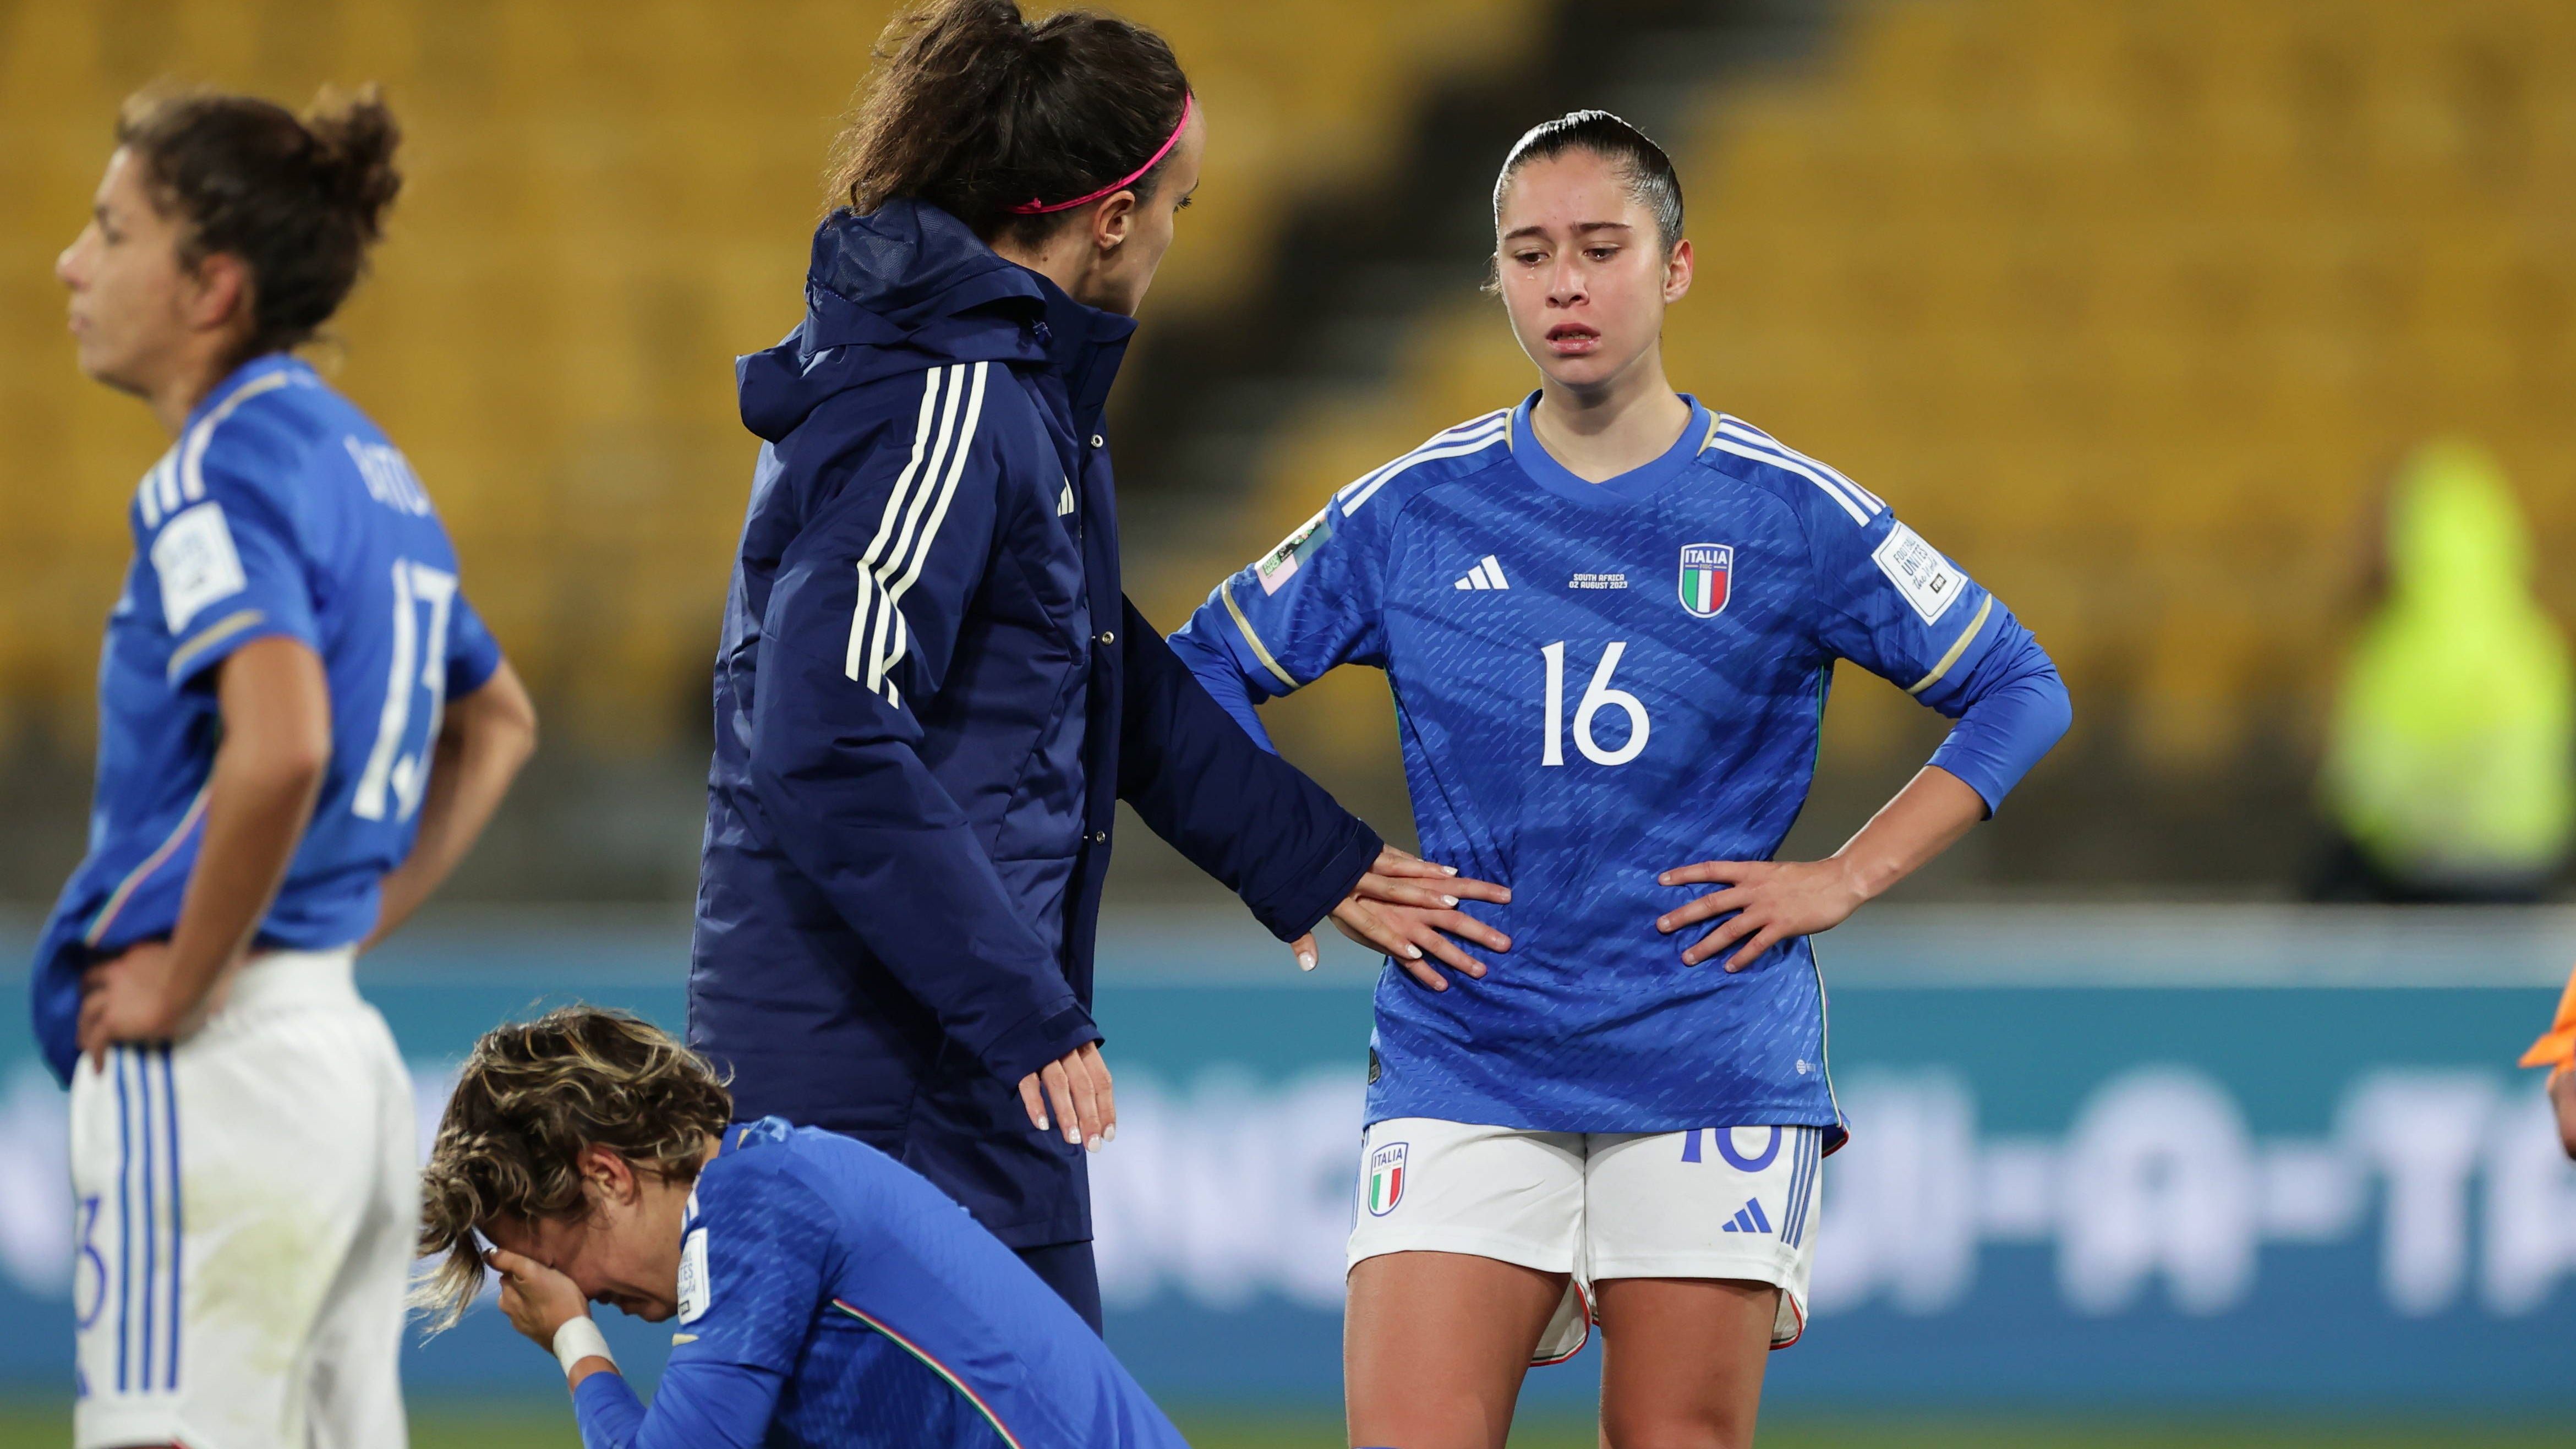 <strong>Verlierer: Italien</strong><br>Italien zählt zwar noch lange nicht zu den großen Nationen des Frauenfußballs, doch die Erwartungshaltung ist in den vergangenen Jahren gestiegen. Schon bei der Europameisterschaft gehörte das talentierte Team zu den Geheimtipps, wenn es um positive Überraschungen geht. Sang- und klanglos schied man in der Gruppenphase aus. Diesmal war es enger, aber erneut nicht genug.